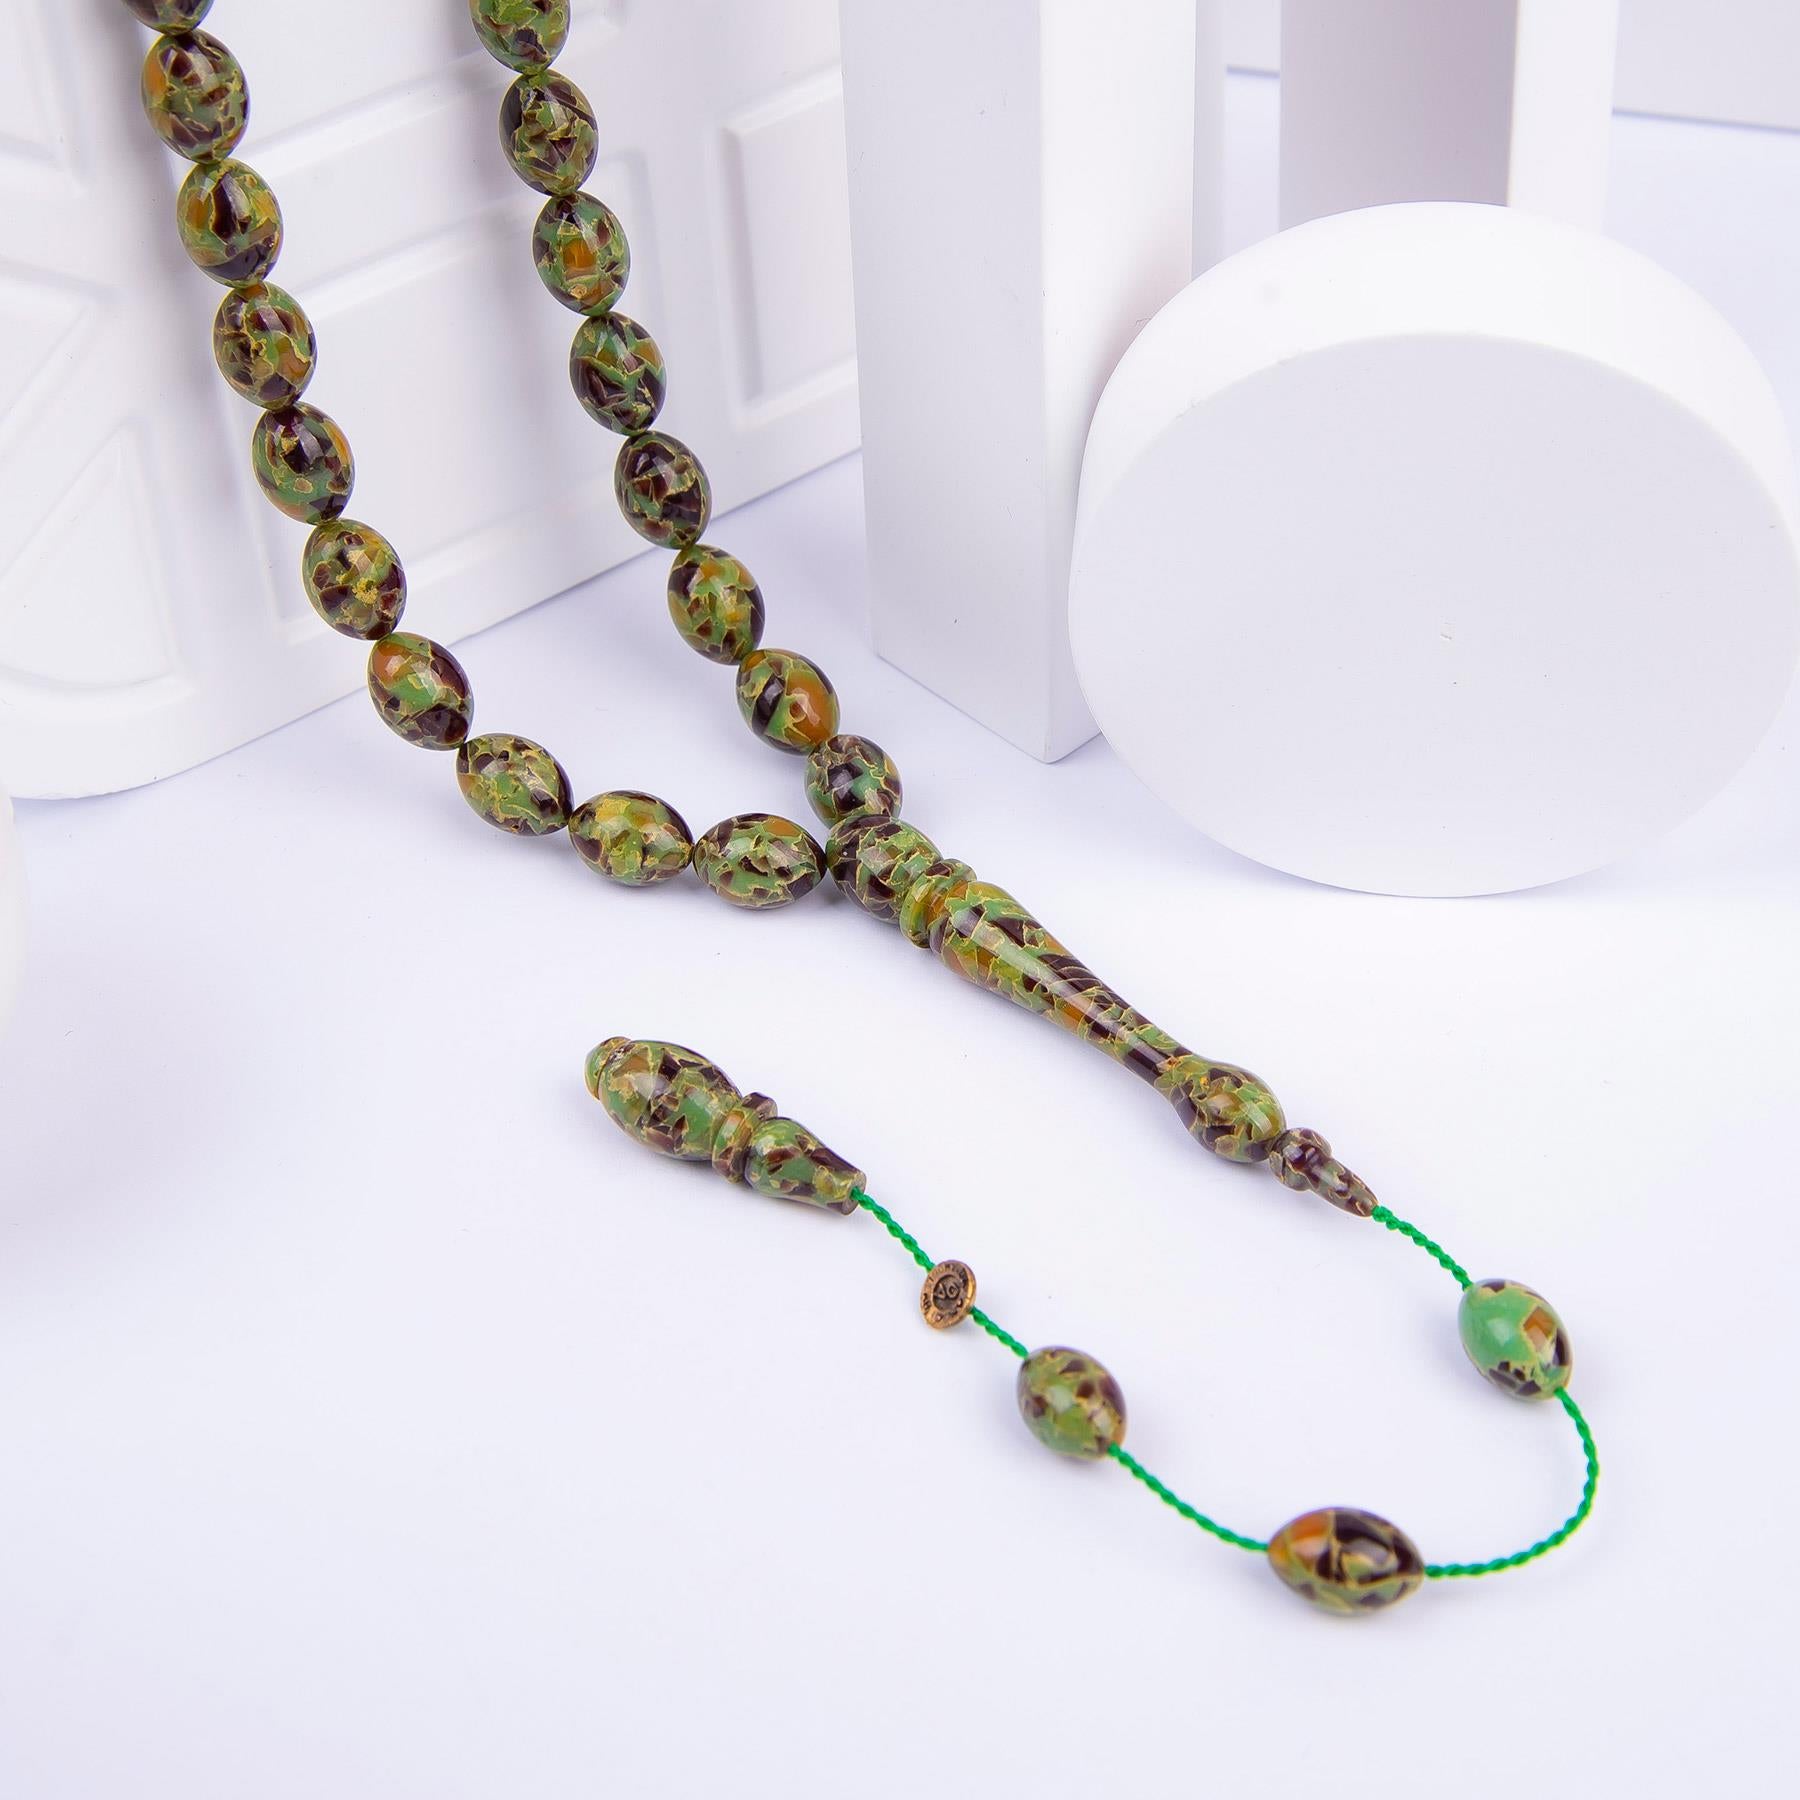 Ve Tesbih Abdullah Darabacı Workmanship Amber Prayer Beads 3